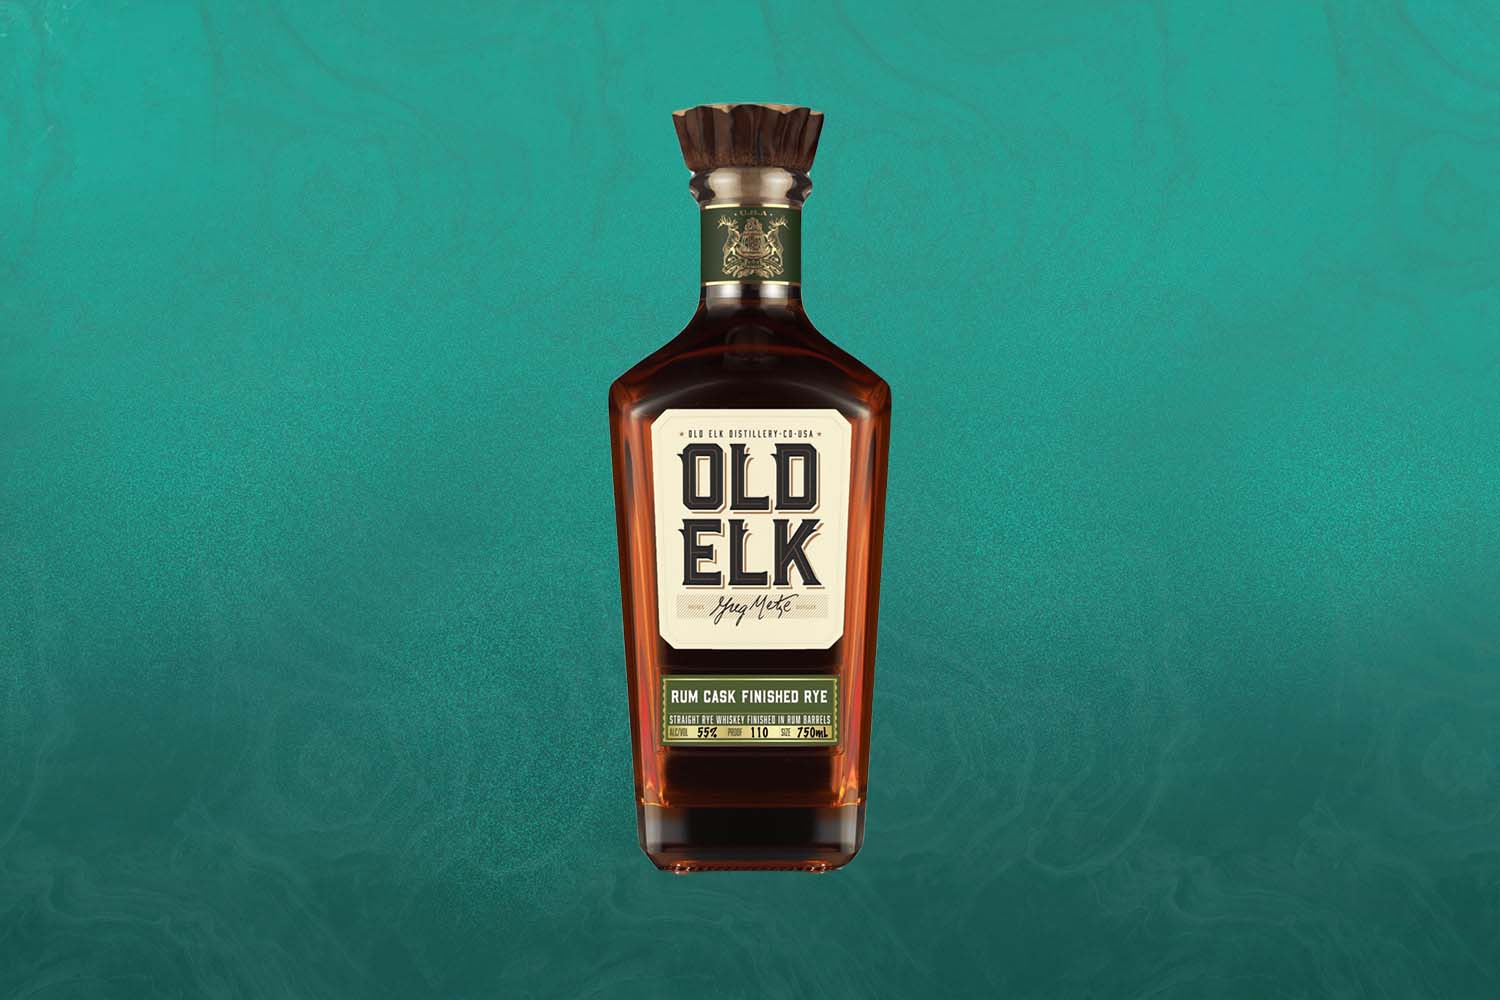 Old Elk Rum Cask Finished Rye